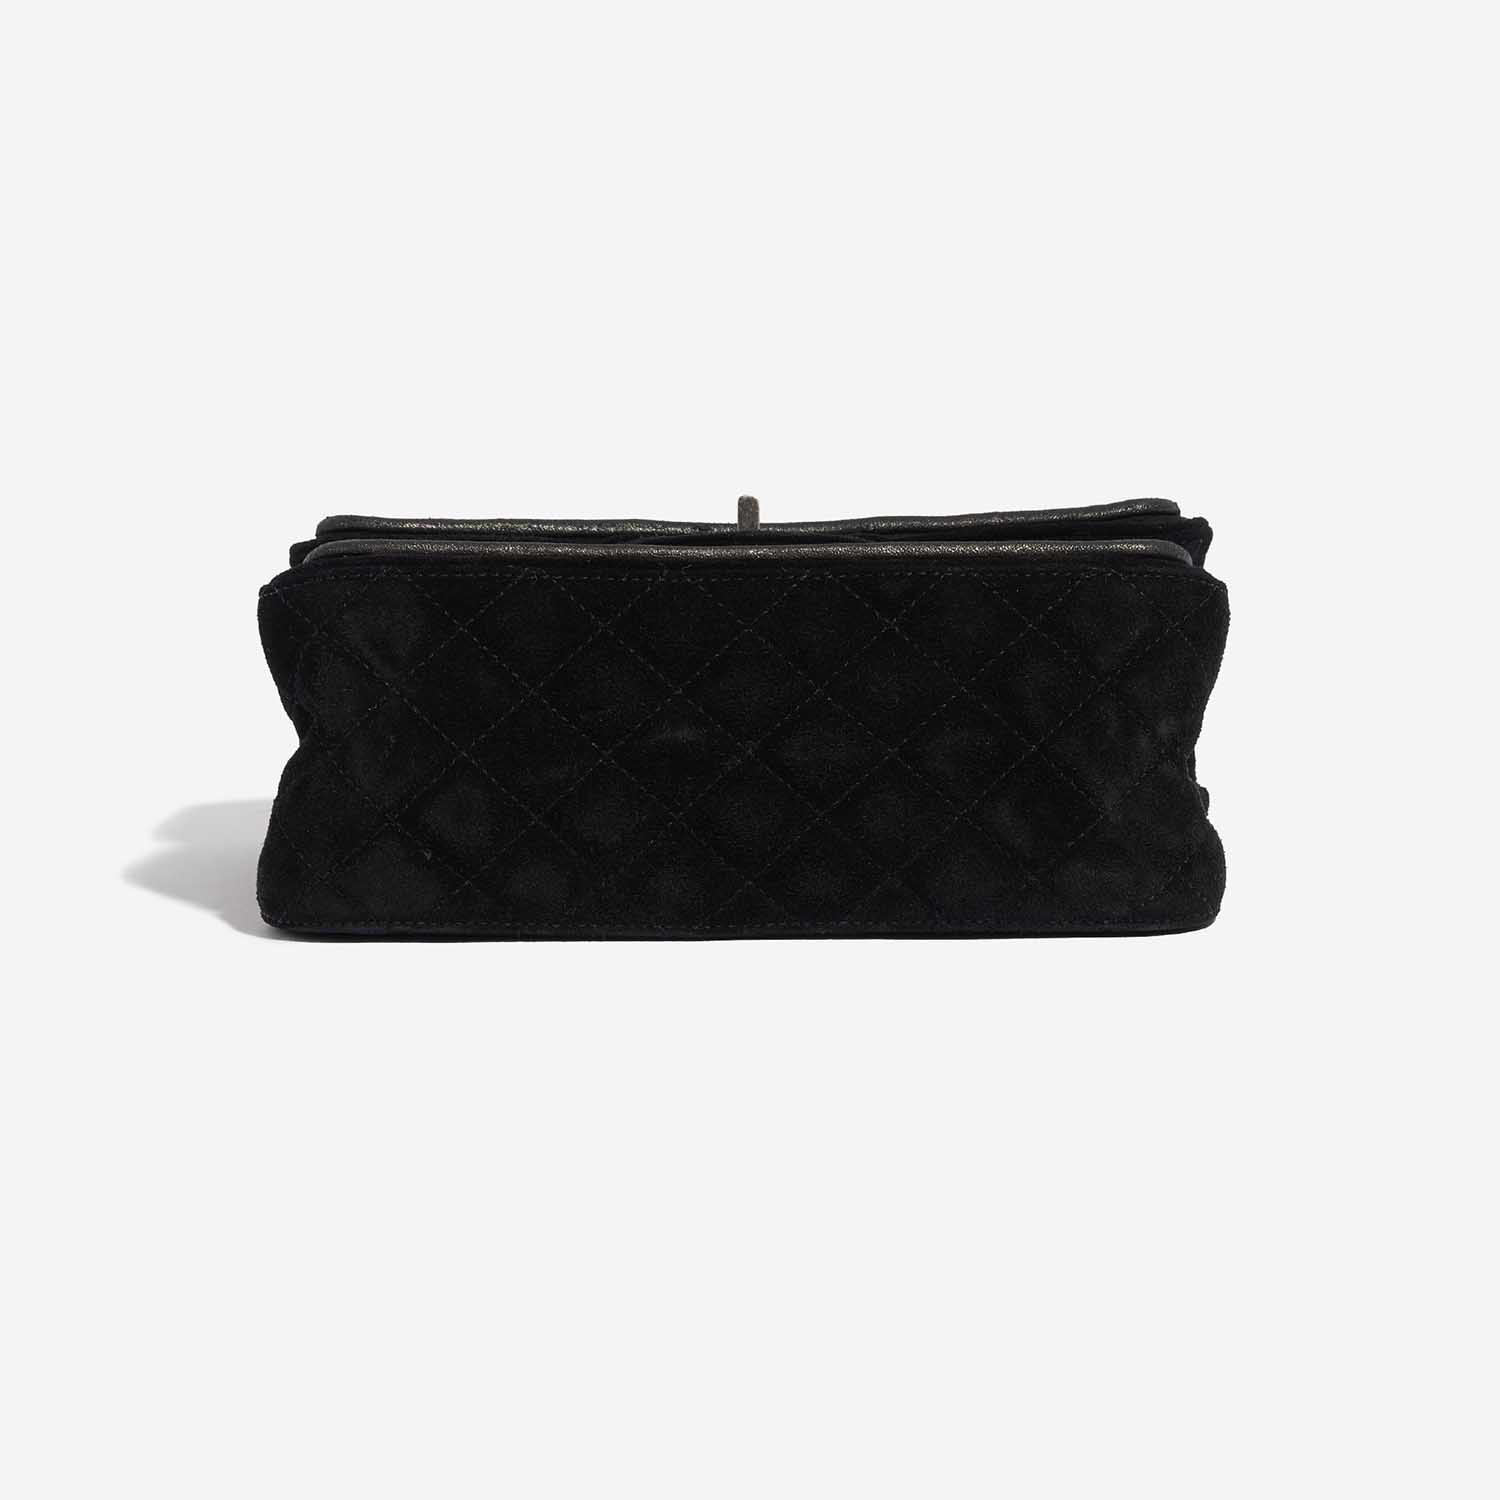 Pre-owned Chanel bag 2.55 Reissue Velvet Black Black Bottom | Sell your designer bag on Saclab.com